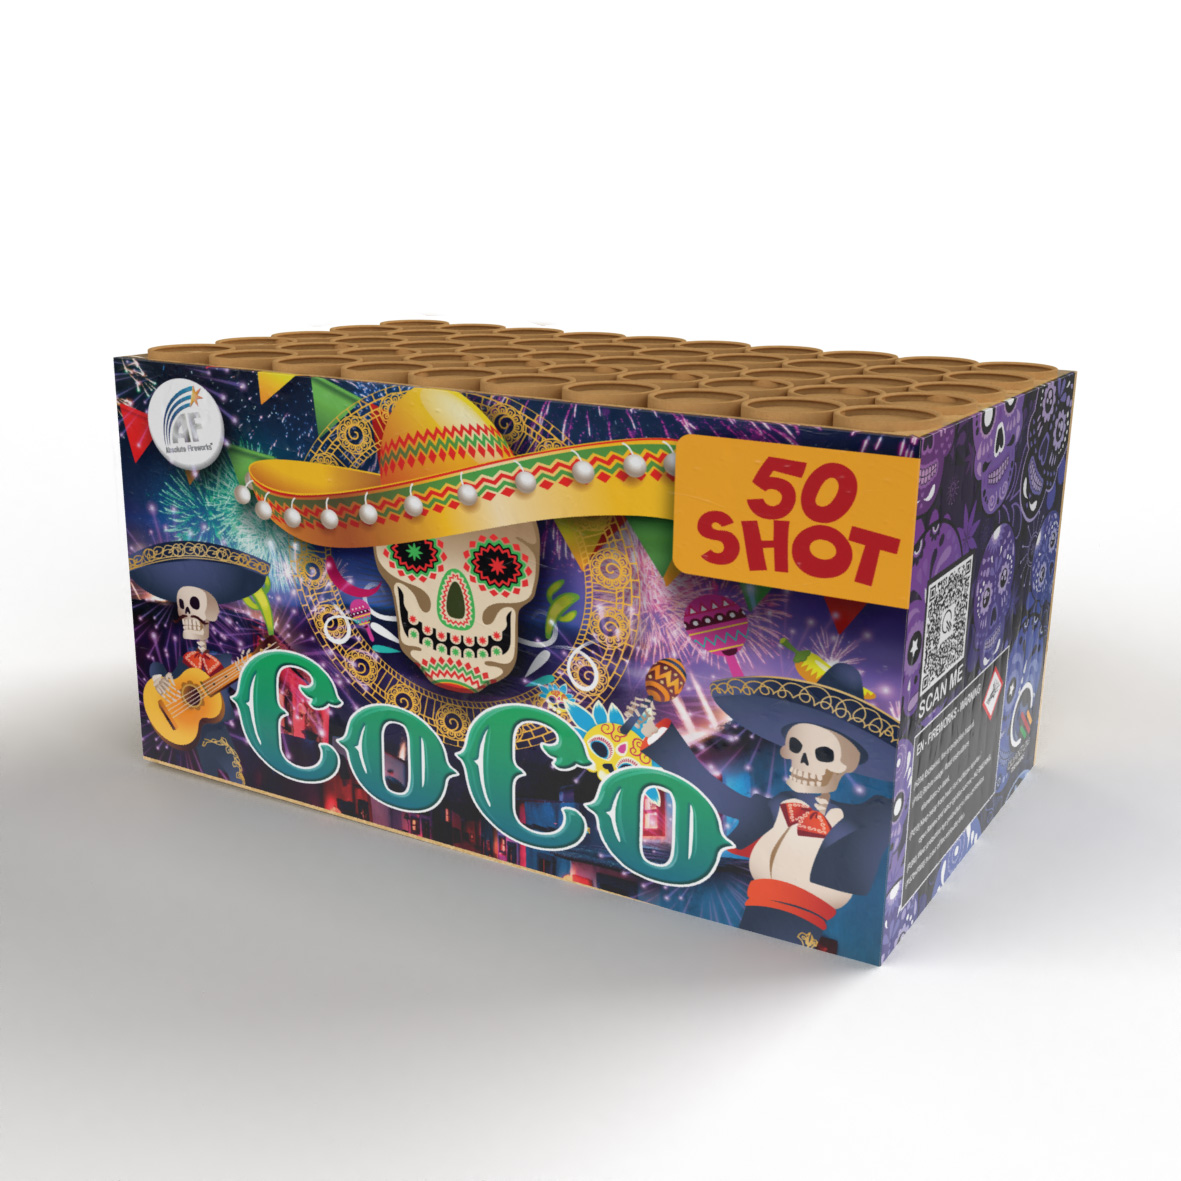 Coco 50 shots